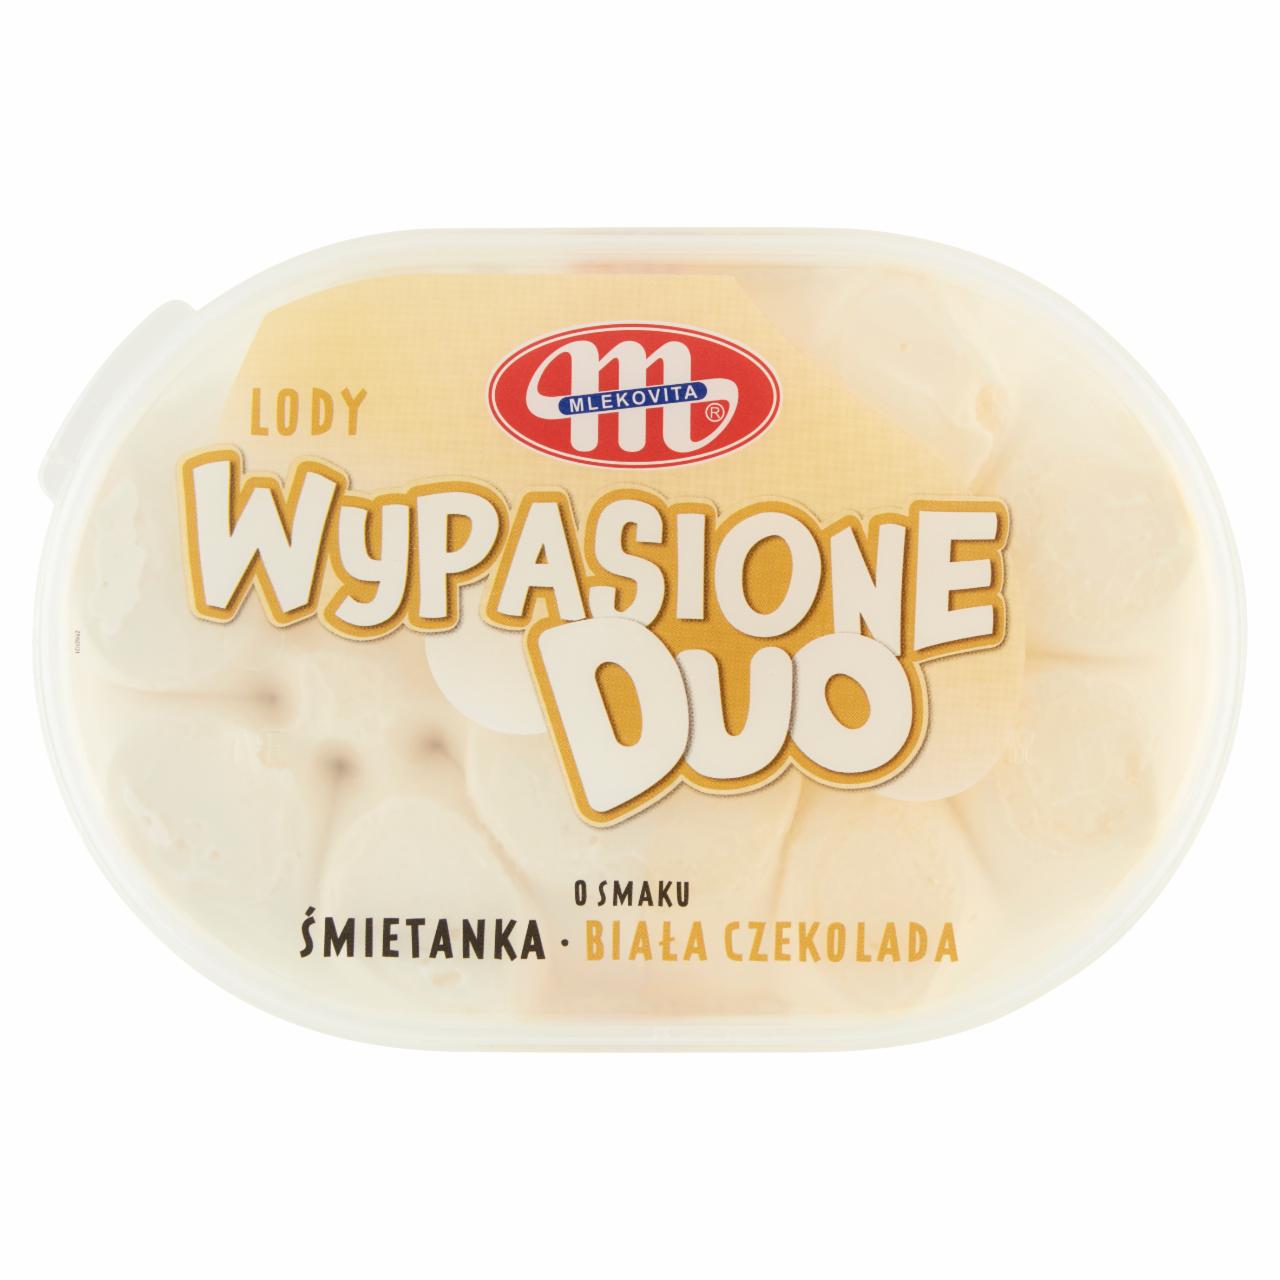 Zdjęcia - Mlekovita Wypasione Duo Lody o smaku śmietanka biała czekolada 1 l